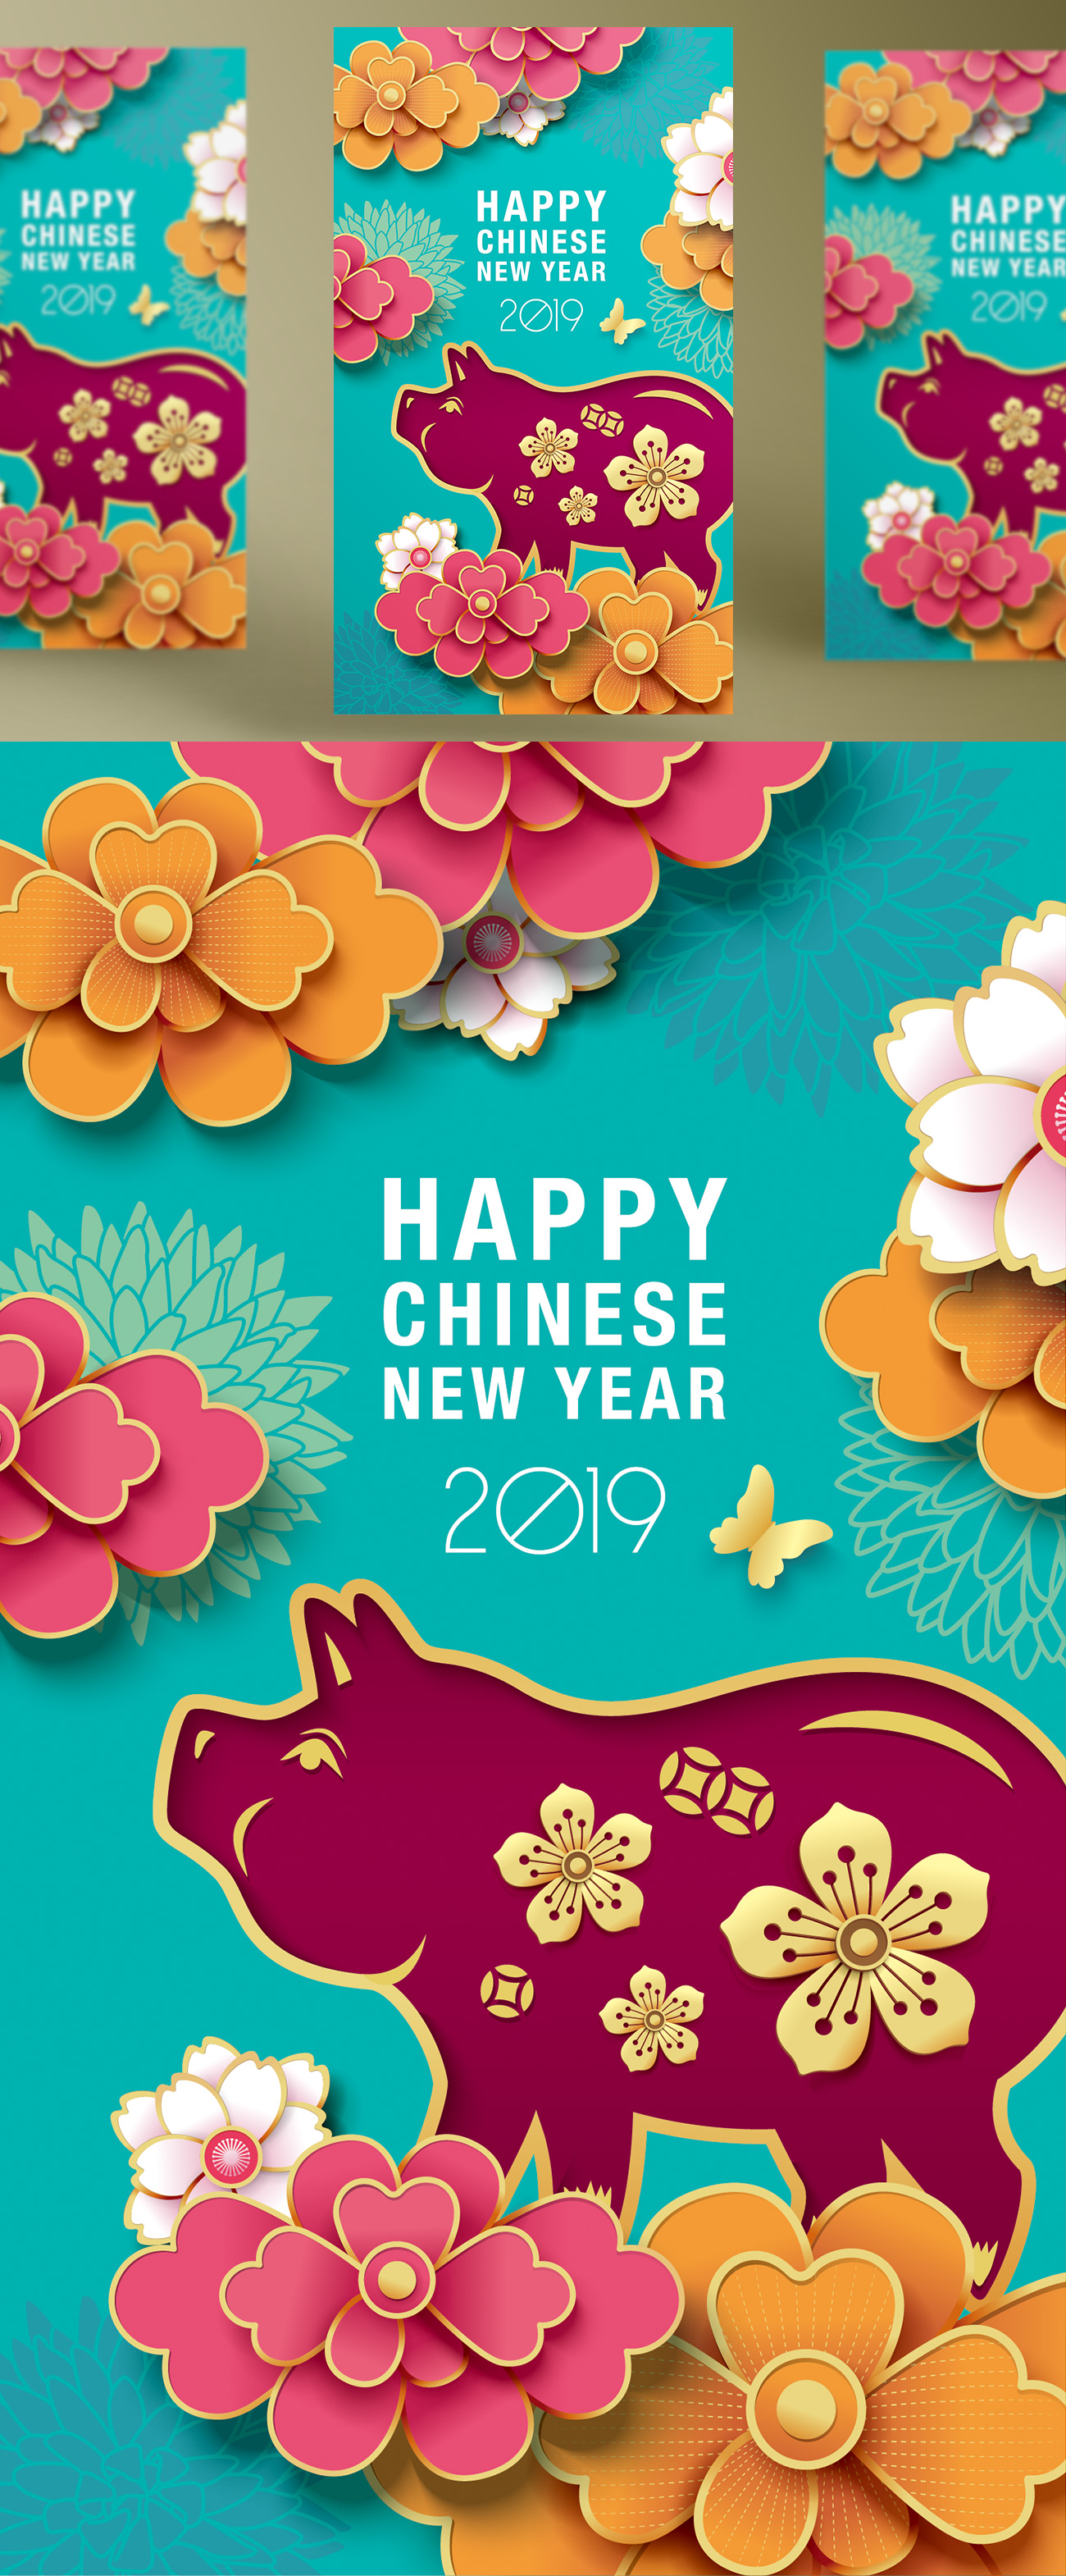 2019猪年中国传统12生肖纸艺术新年图案贺卡设计素材